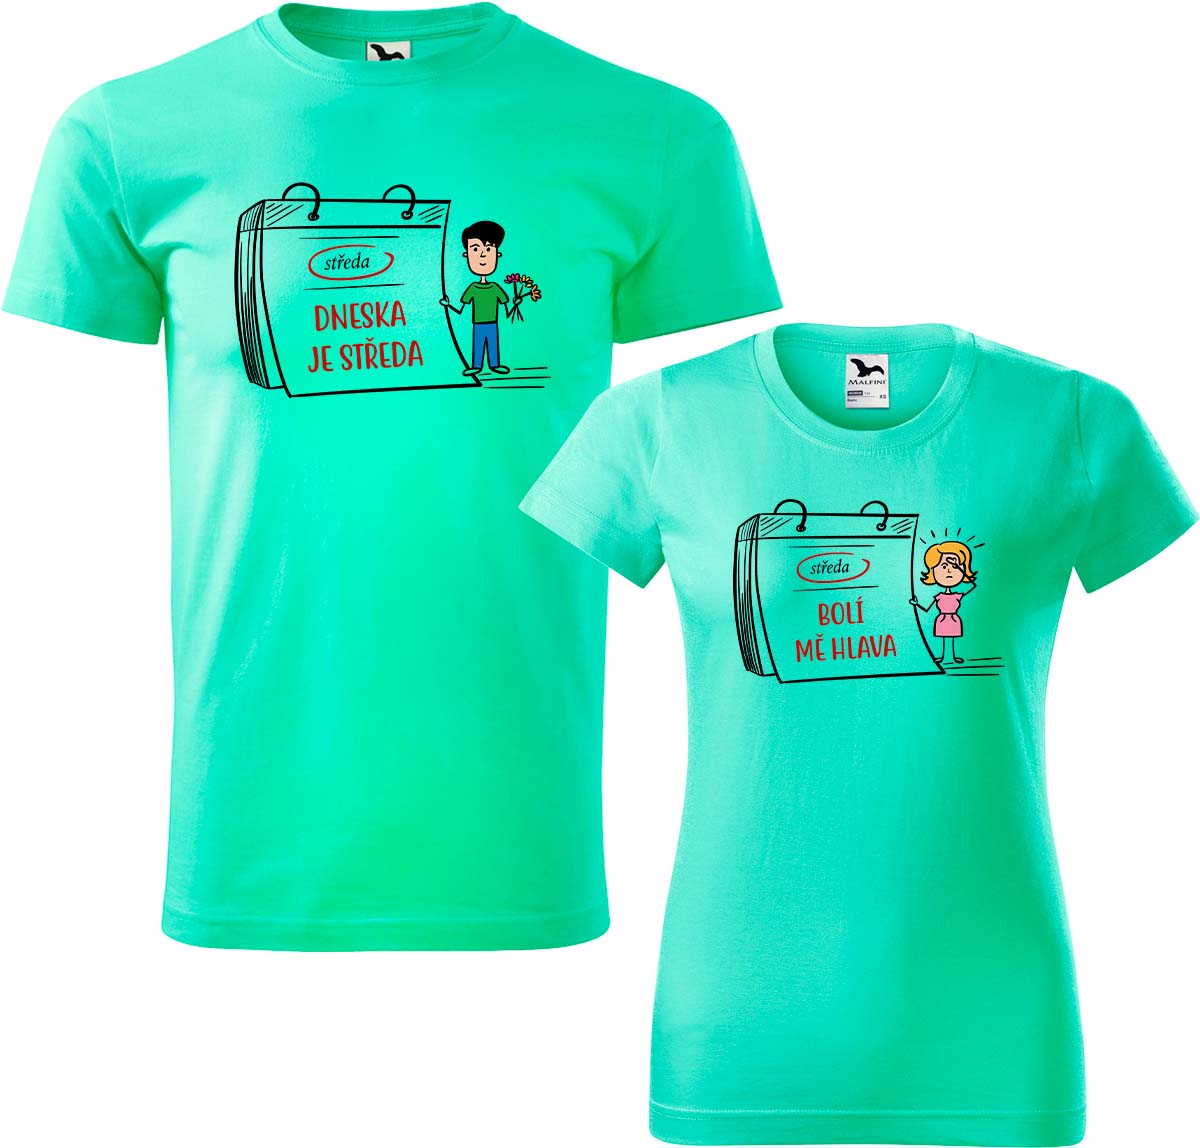 Trička pro páry - Dneska je středa Barva: Mátová (95), Velikost dámské tričko: M, Velikost pánské tričko: XL